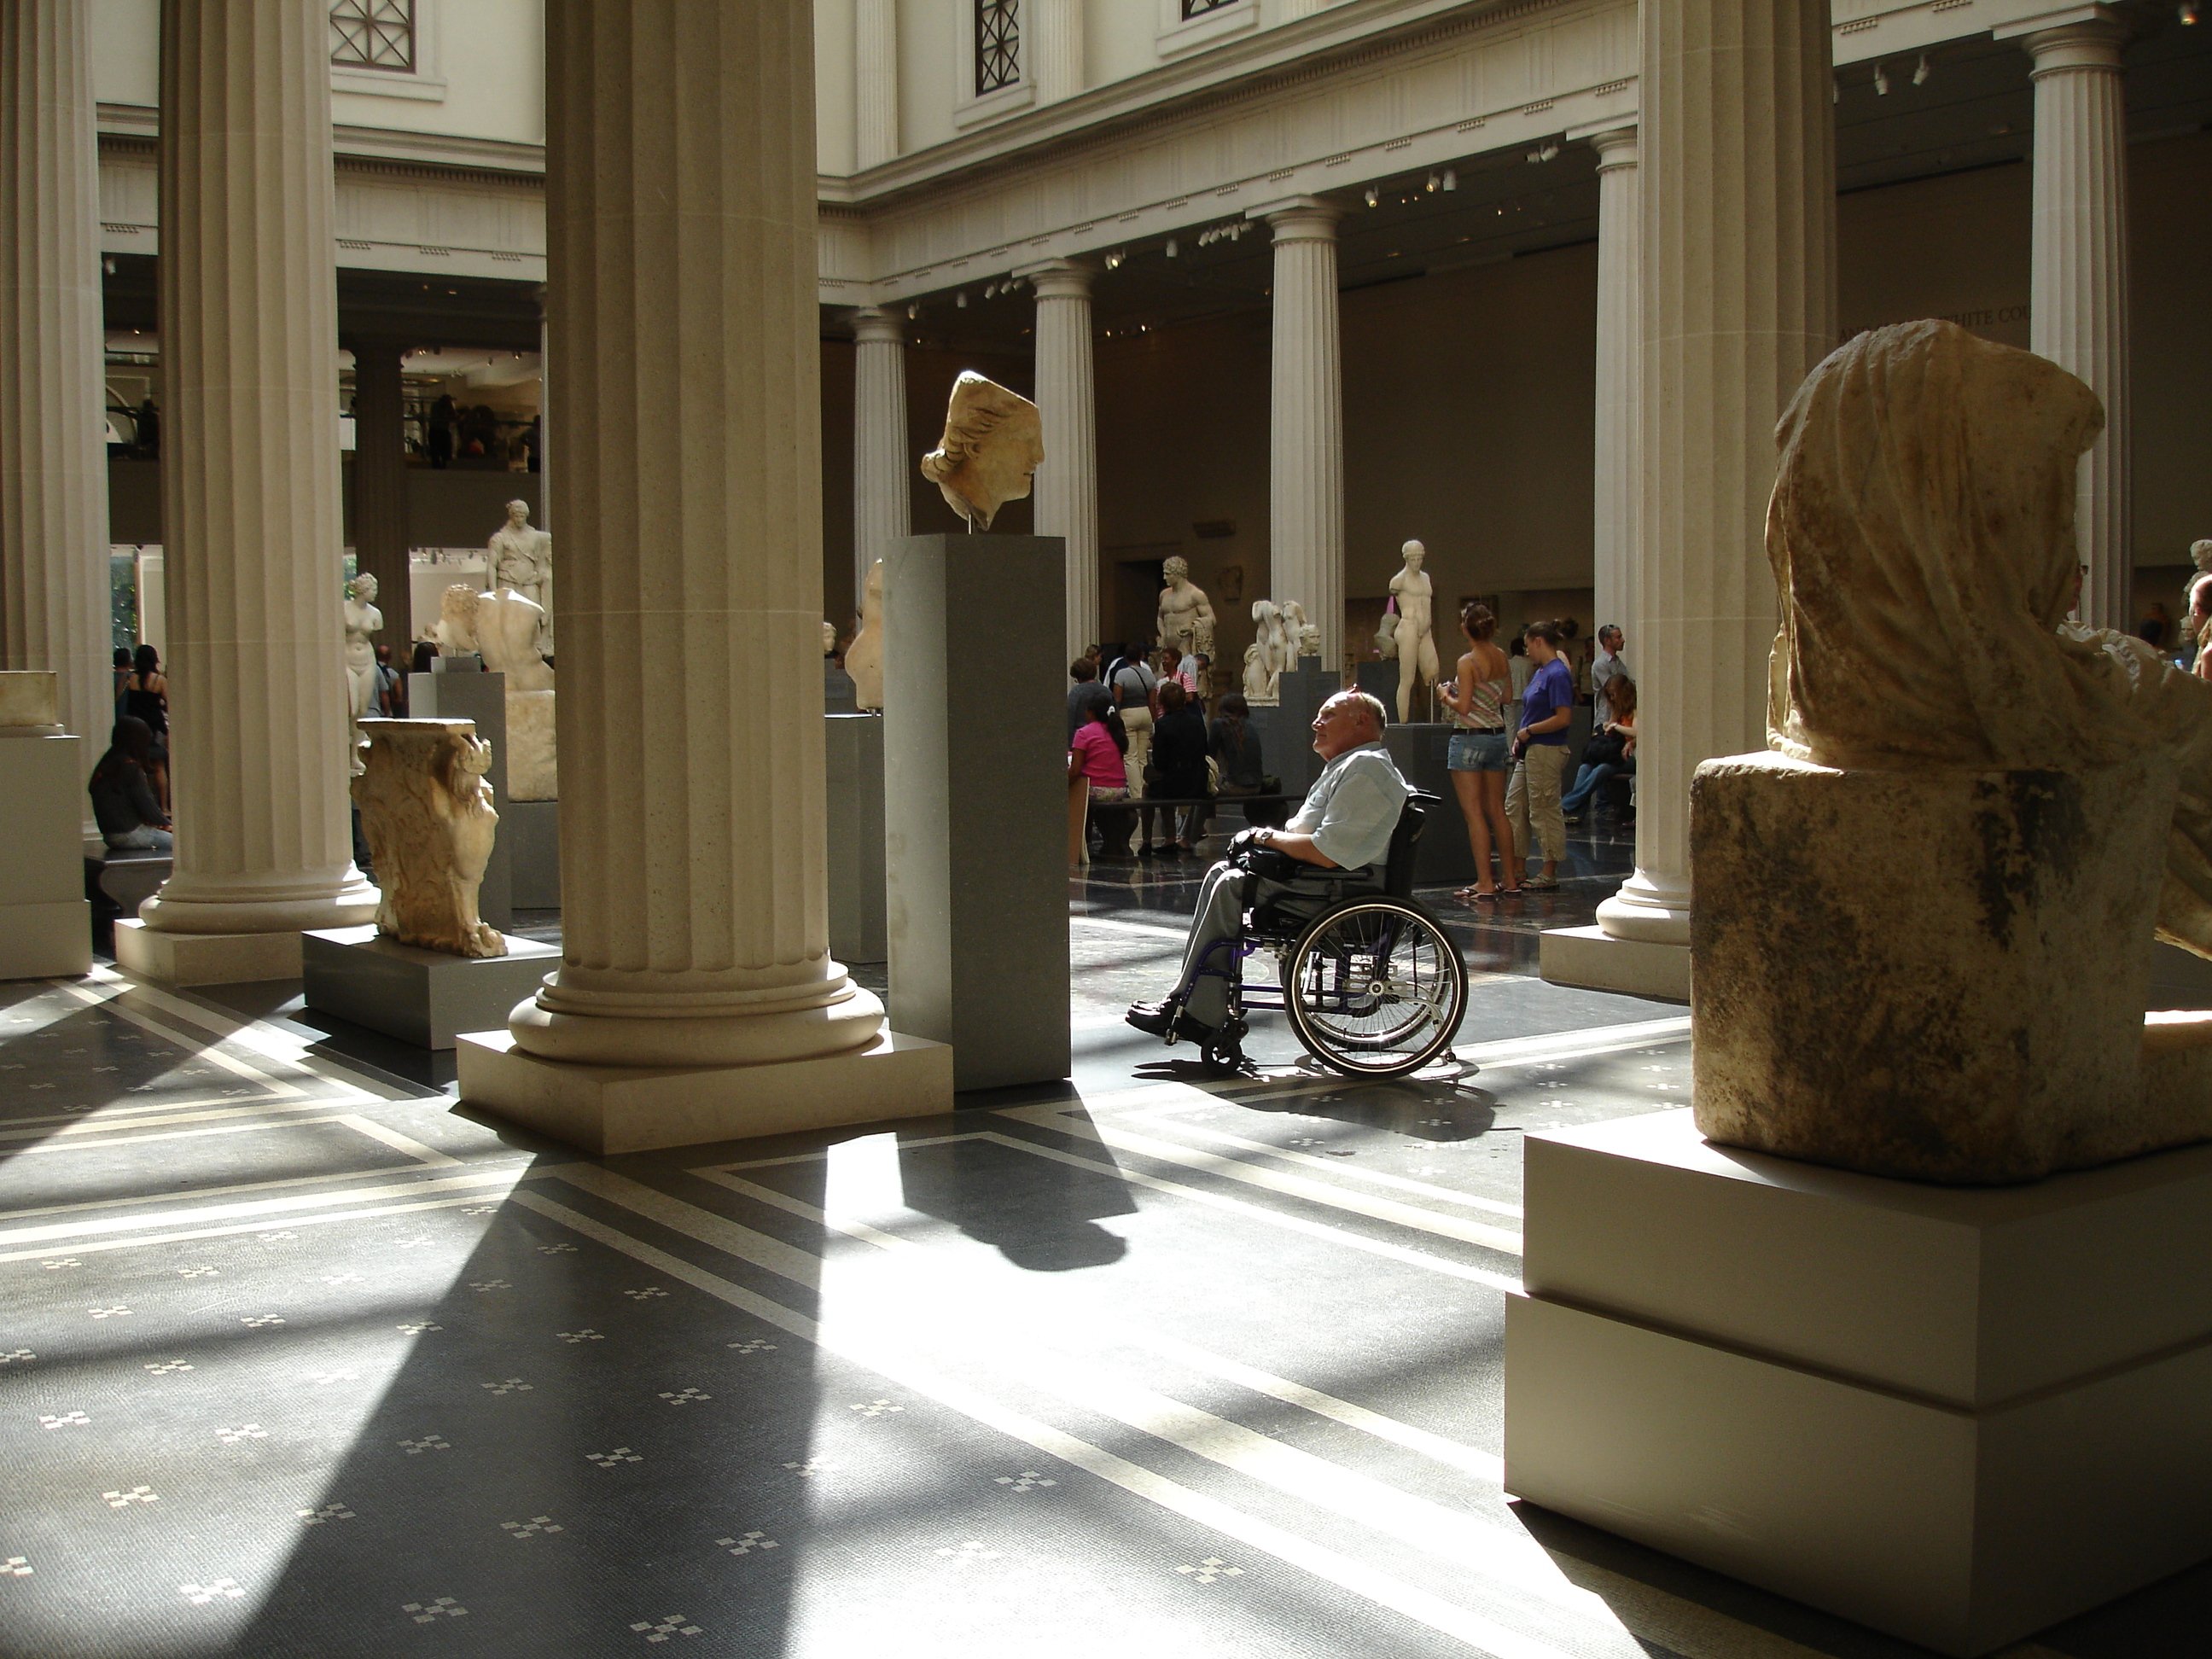 adulto mayor en silla de ruedas observando una escultura en un museo